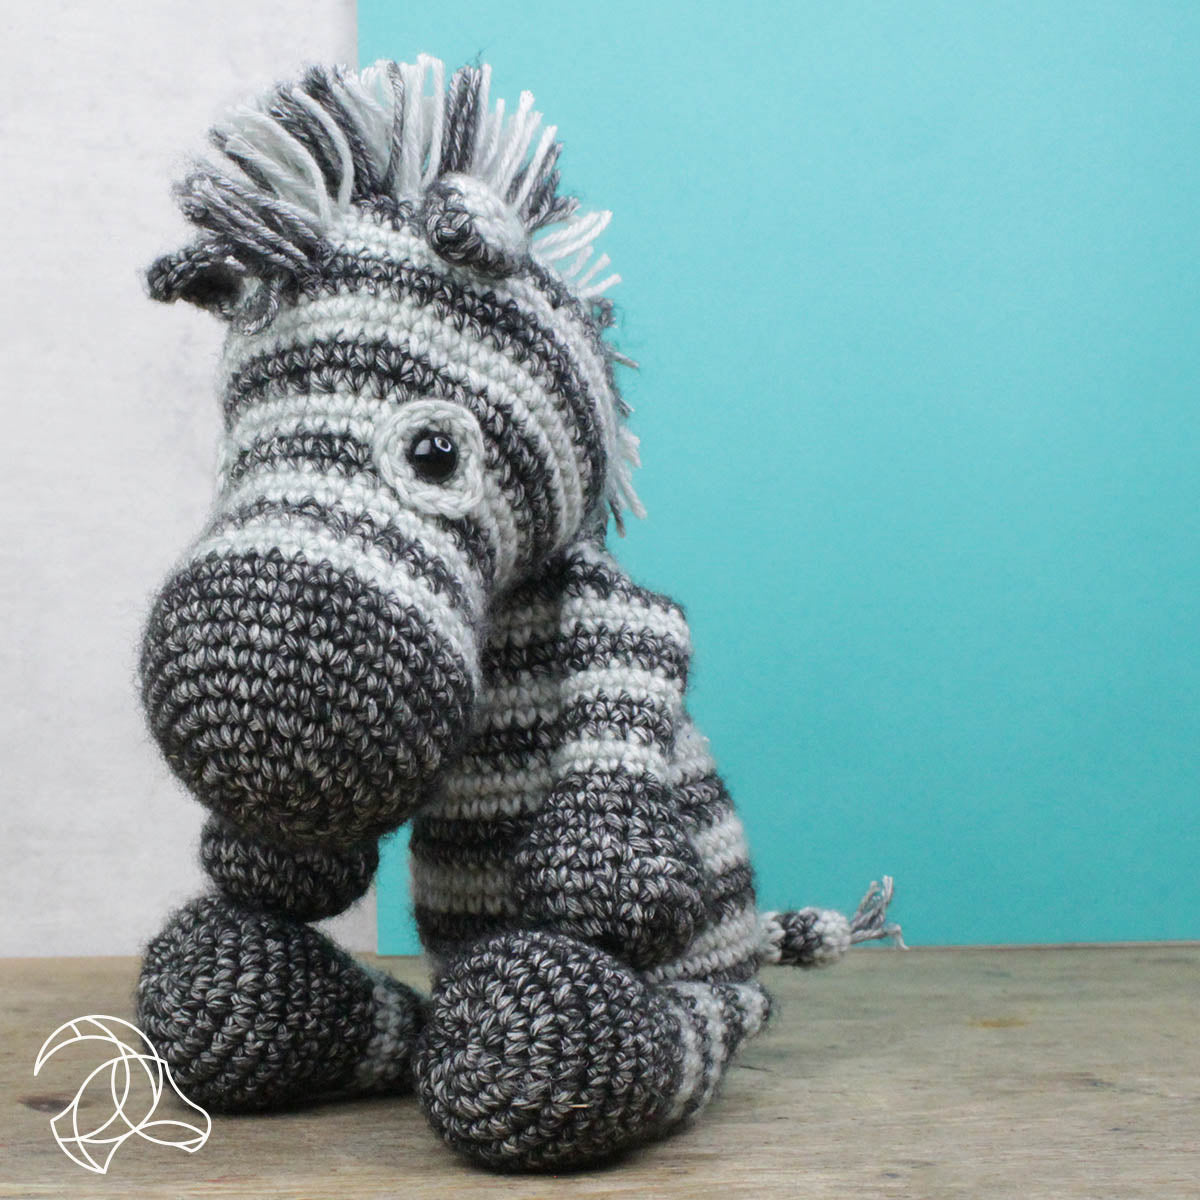 Dirk Zebra Crochet Kit by Hardicraft